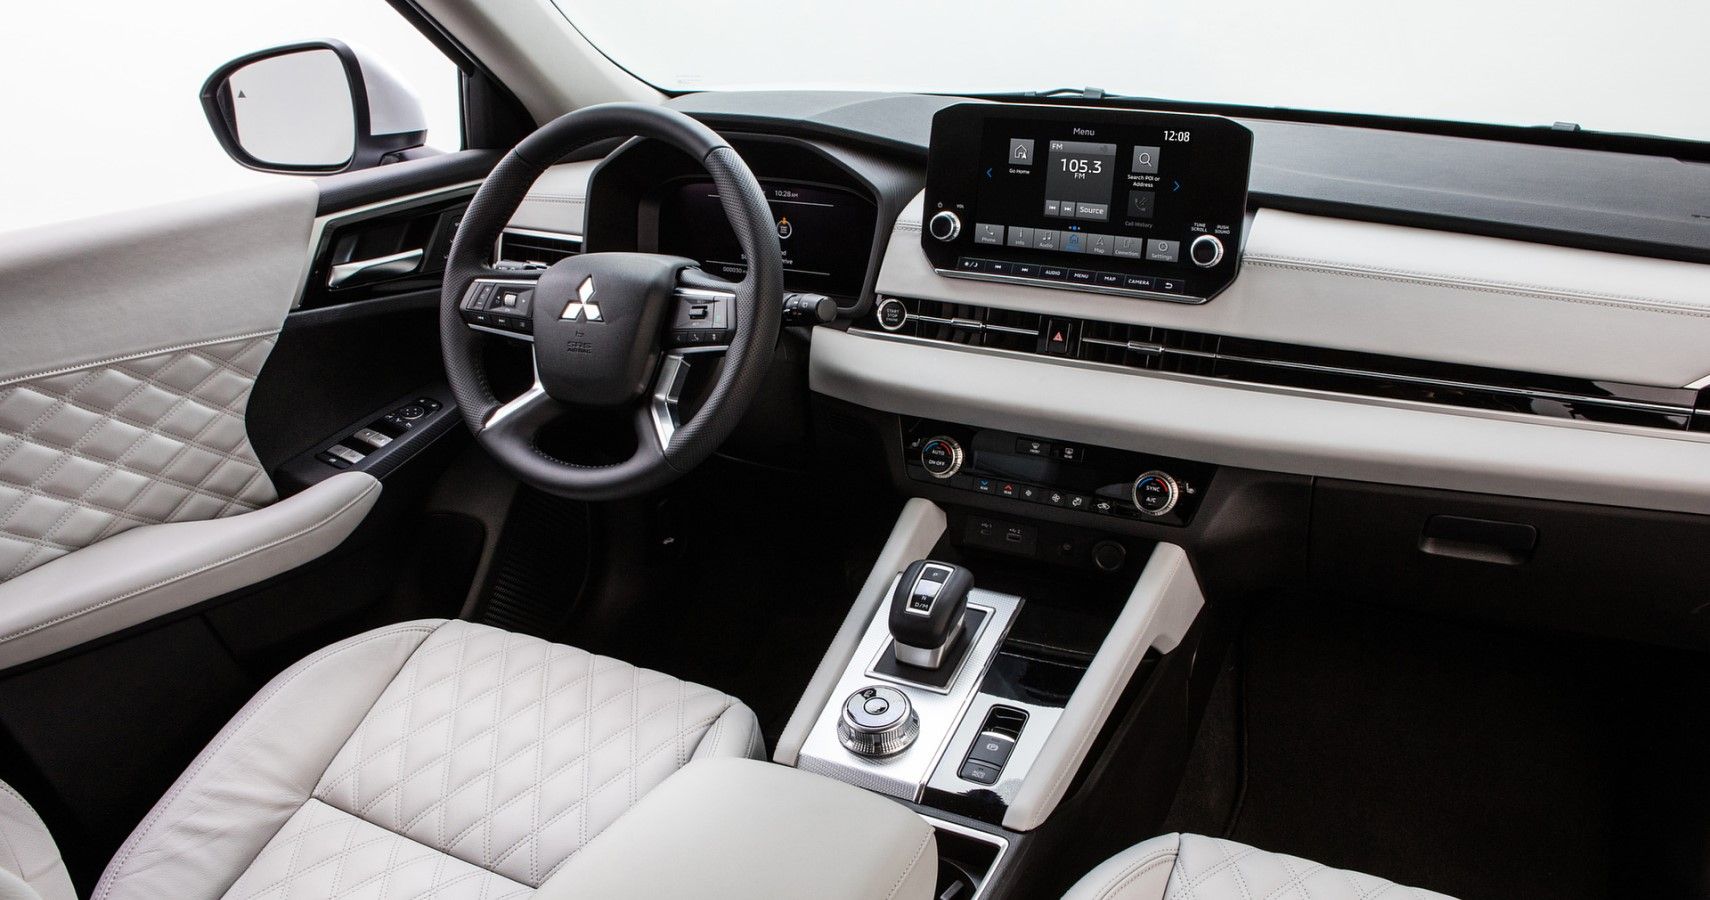 2022 Mitsubishi Outlander dashboard view